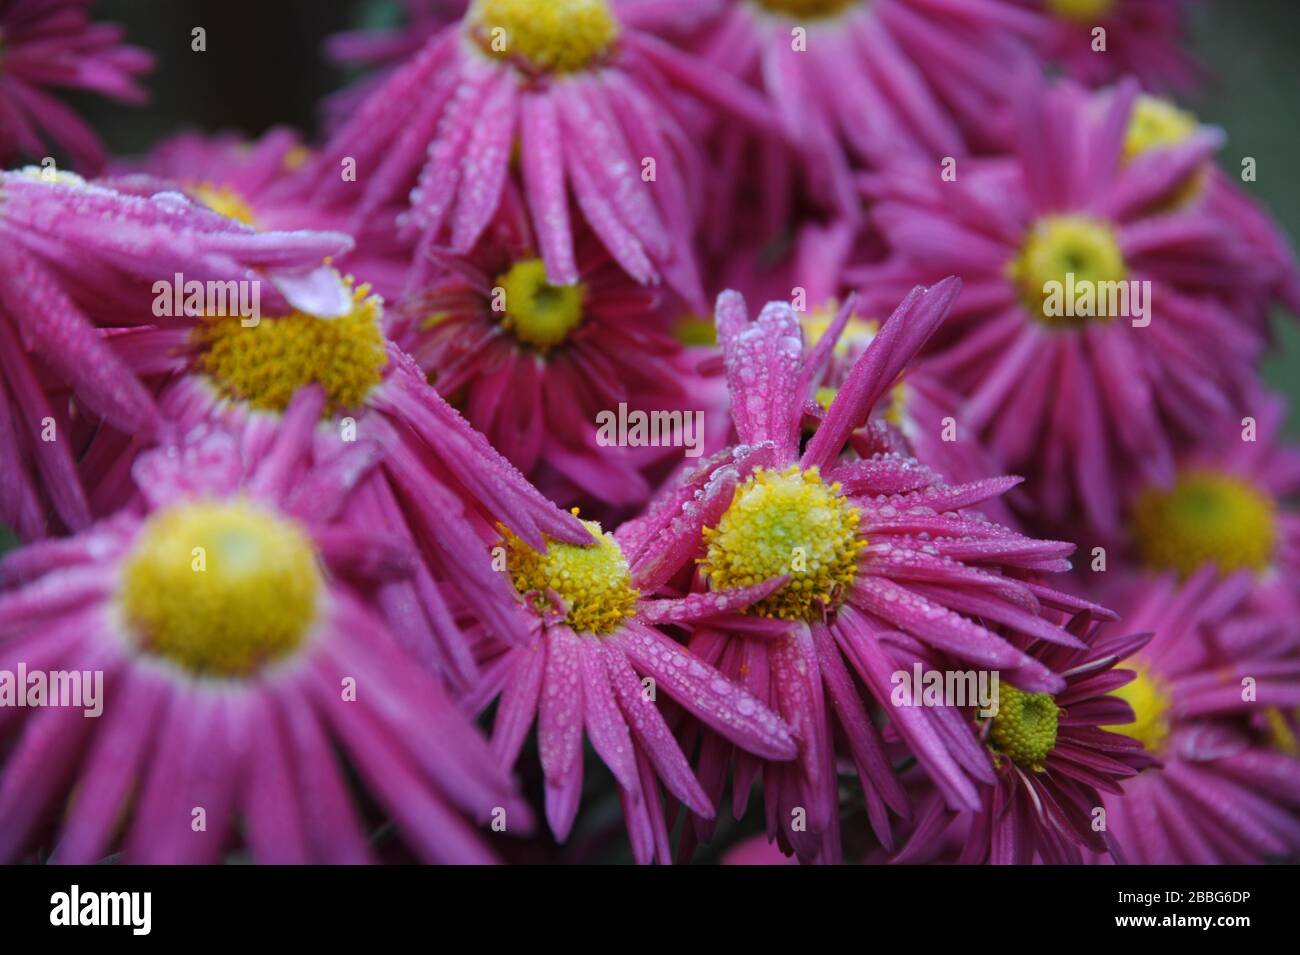 frozen pink daisy-like Chrysantemum blossoms Stock Photo